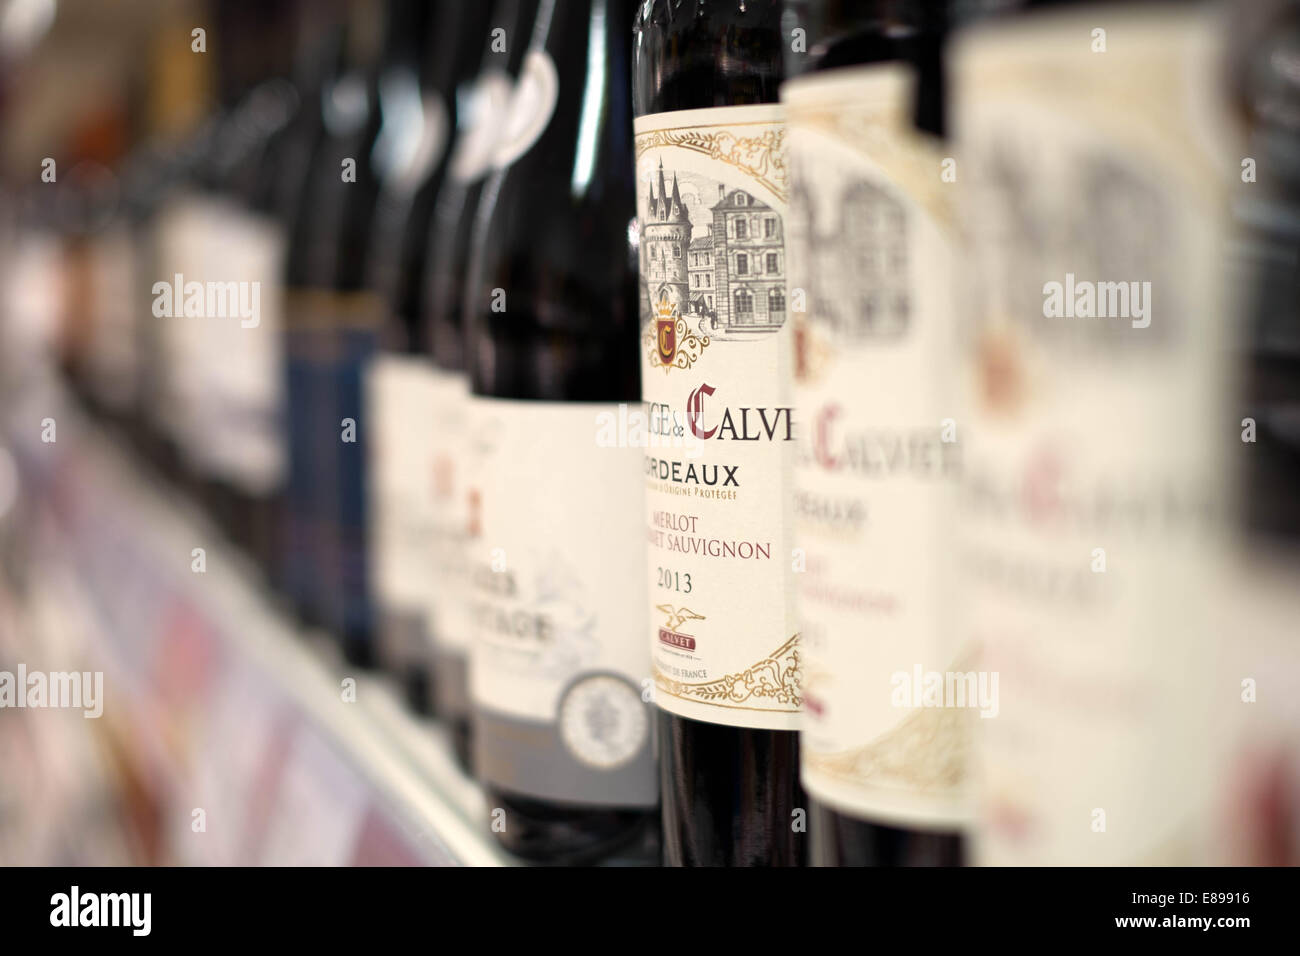 Eine Auswahl an roten Wein in Flaschen auf einem Regal in einem Zweig der Sainsbury Supermarkt Preise & Angebote anzeigen Stockfoto